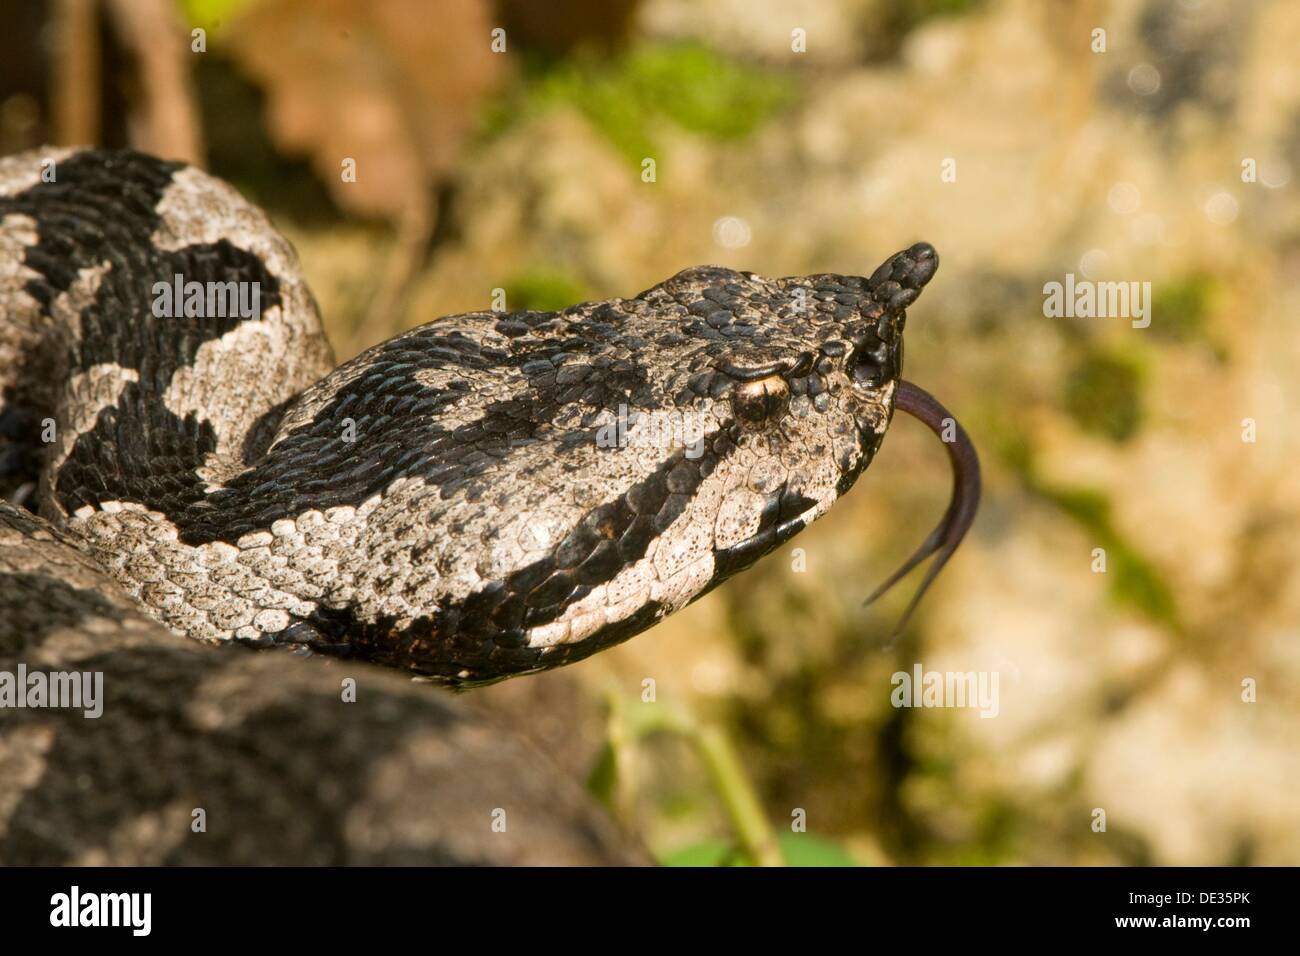 Víbora cornuda (Vipera ammodytes), serpiente venenosa, lanzándose de la lengua dentro y fuera, karst, Croacia Foto de stock